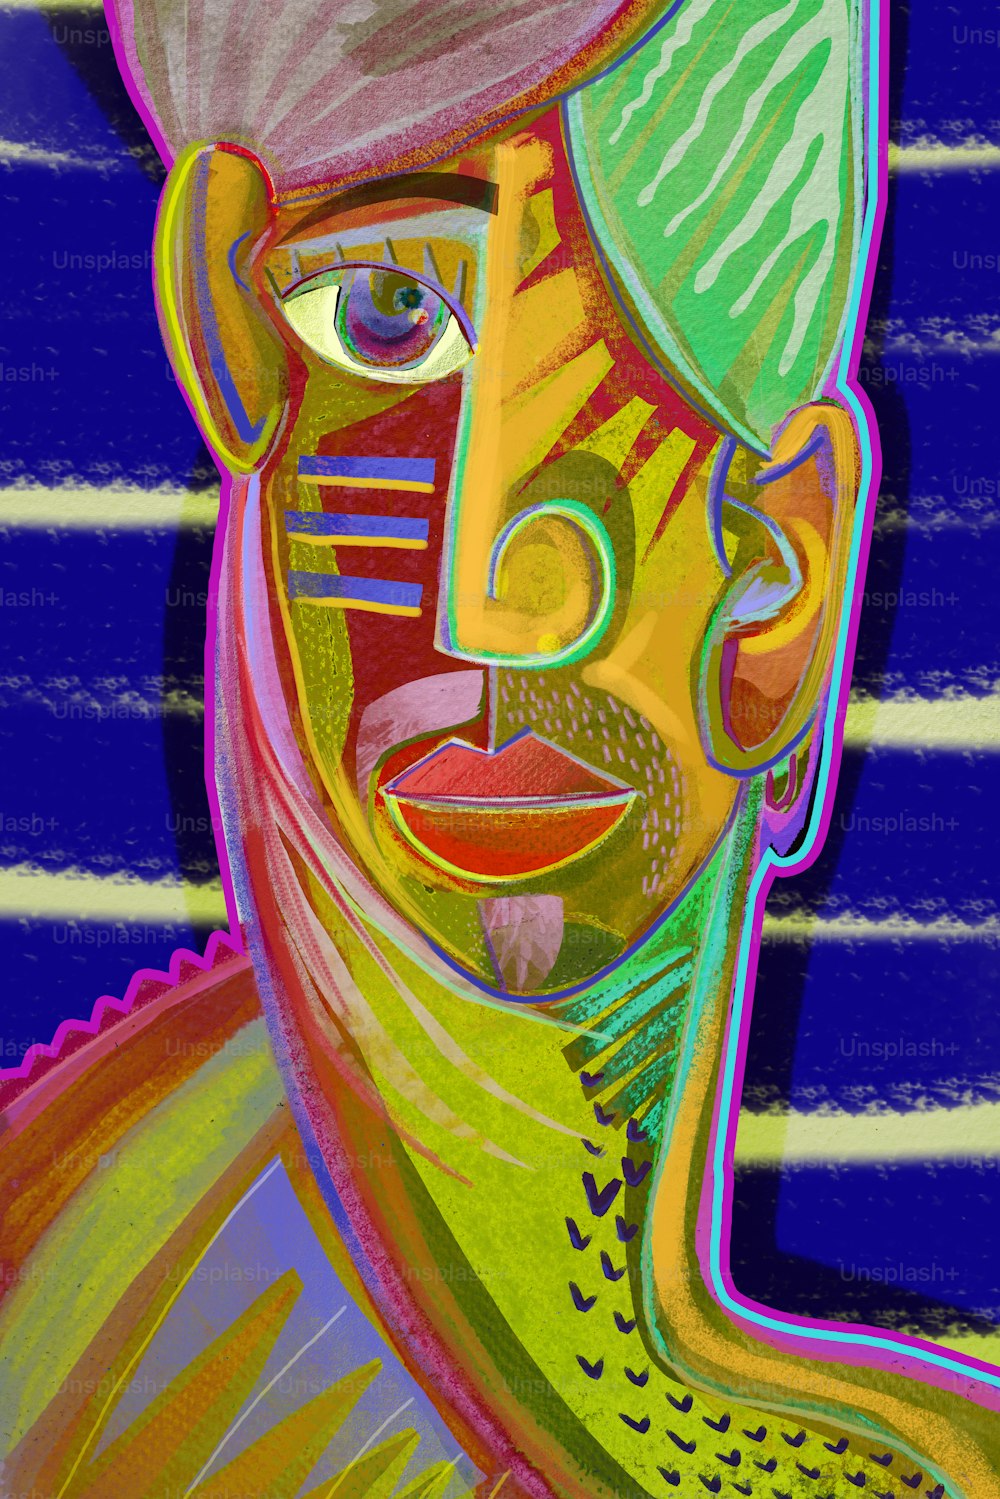 Metaverso Arte Cubismo Colorido. Retrato de um homem pensante desenhado em estilo cubista